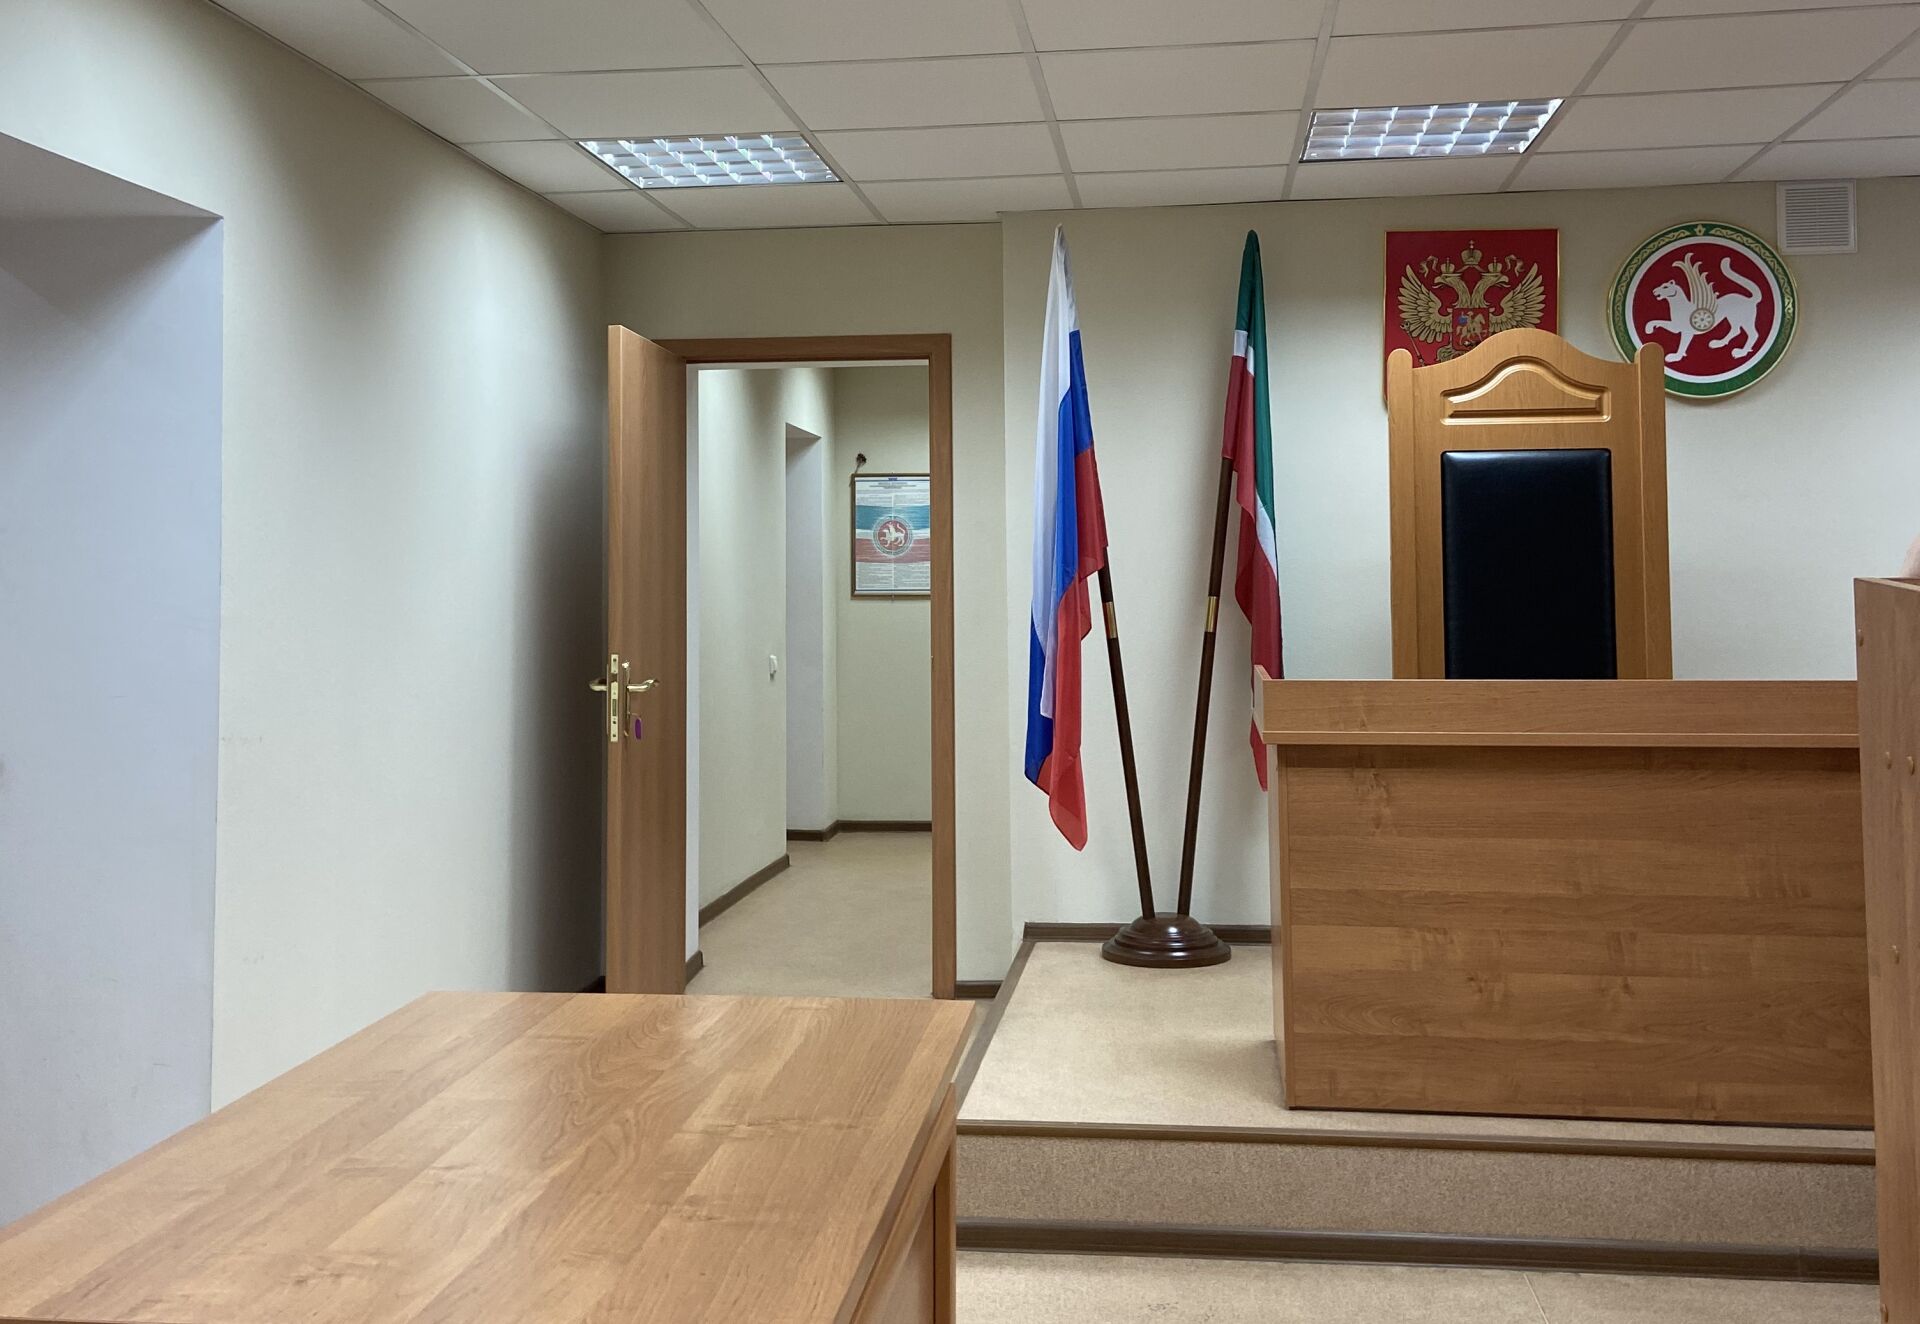 Жителя Челнов оштрафовали на 30 тыс. рублей за дискредитацию военнослужащих России